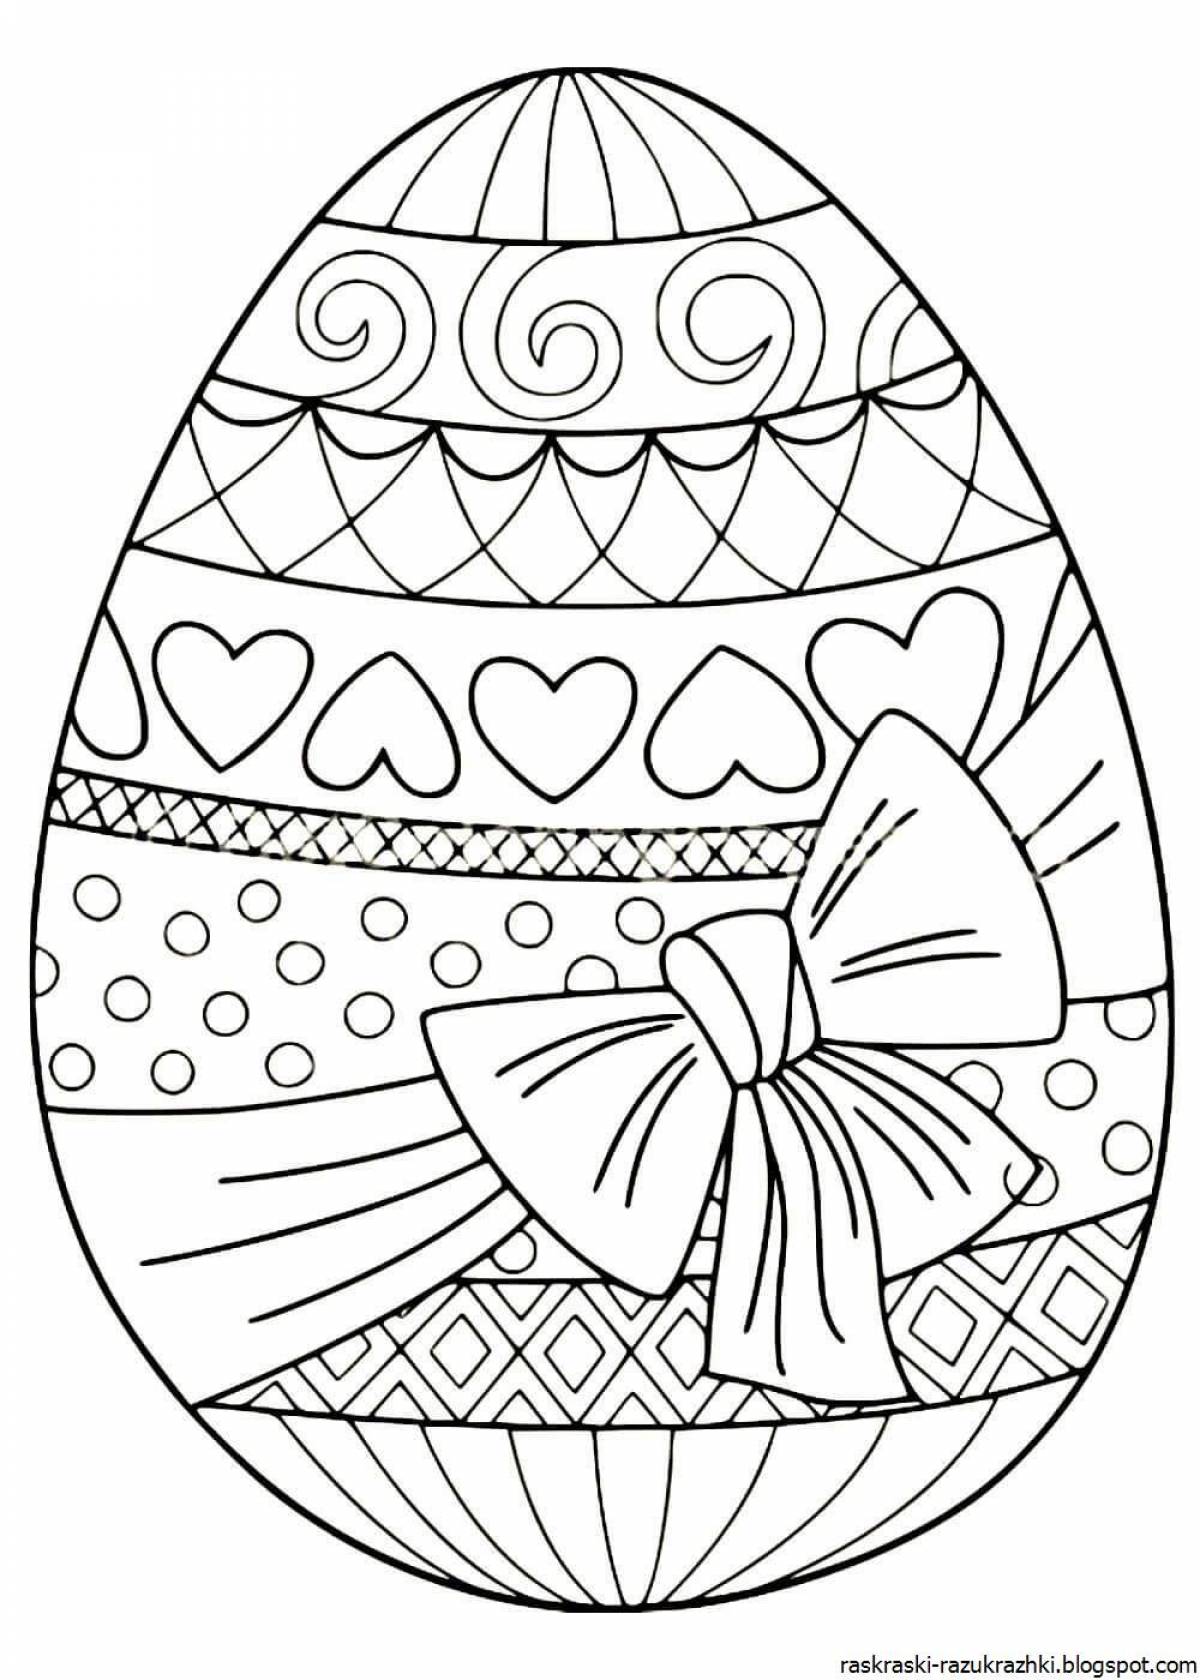 Раскрашиваем пасхальные. Пасхальное яйцо раскраска. Раскраски пасхальные для детей. Пасхальное яйцо раскраска для детей. Пасхальные яйца для раскрашивания.